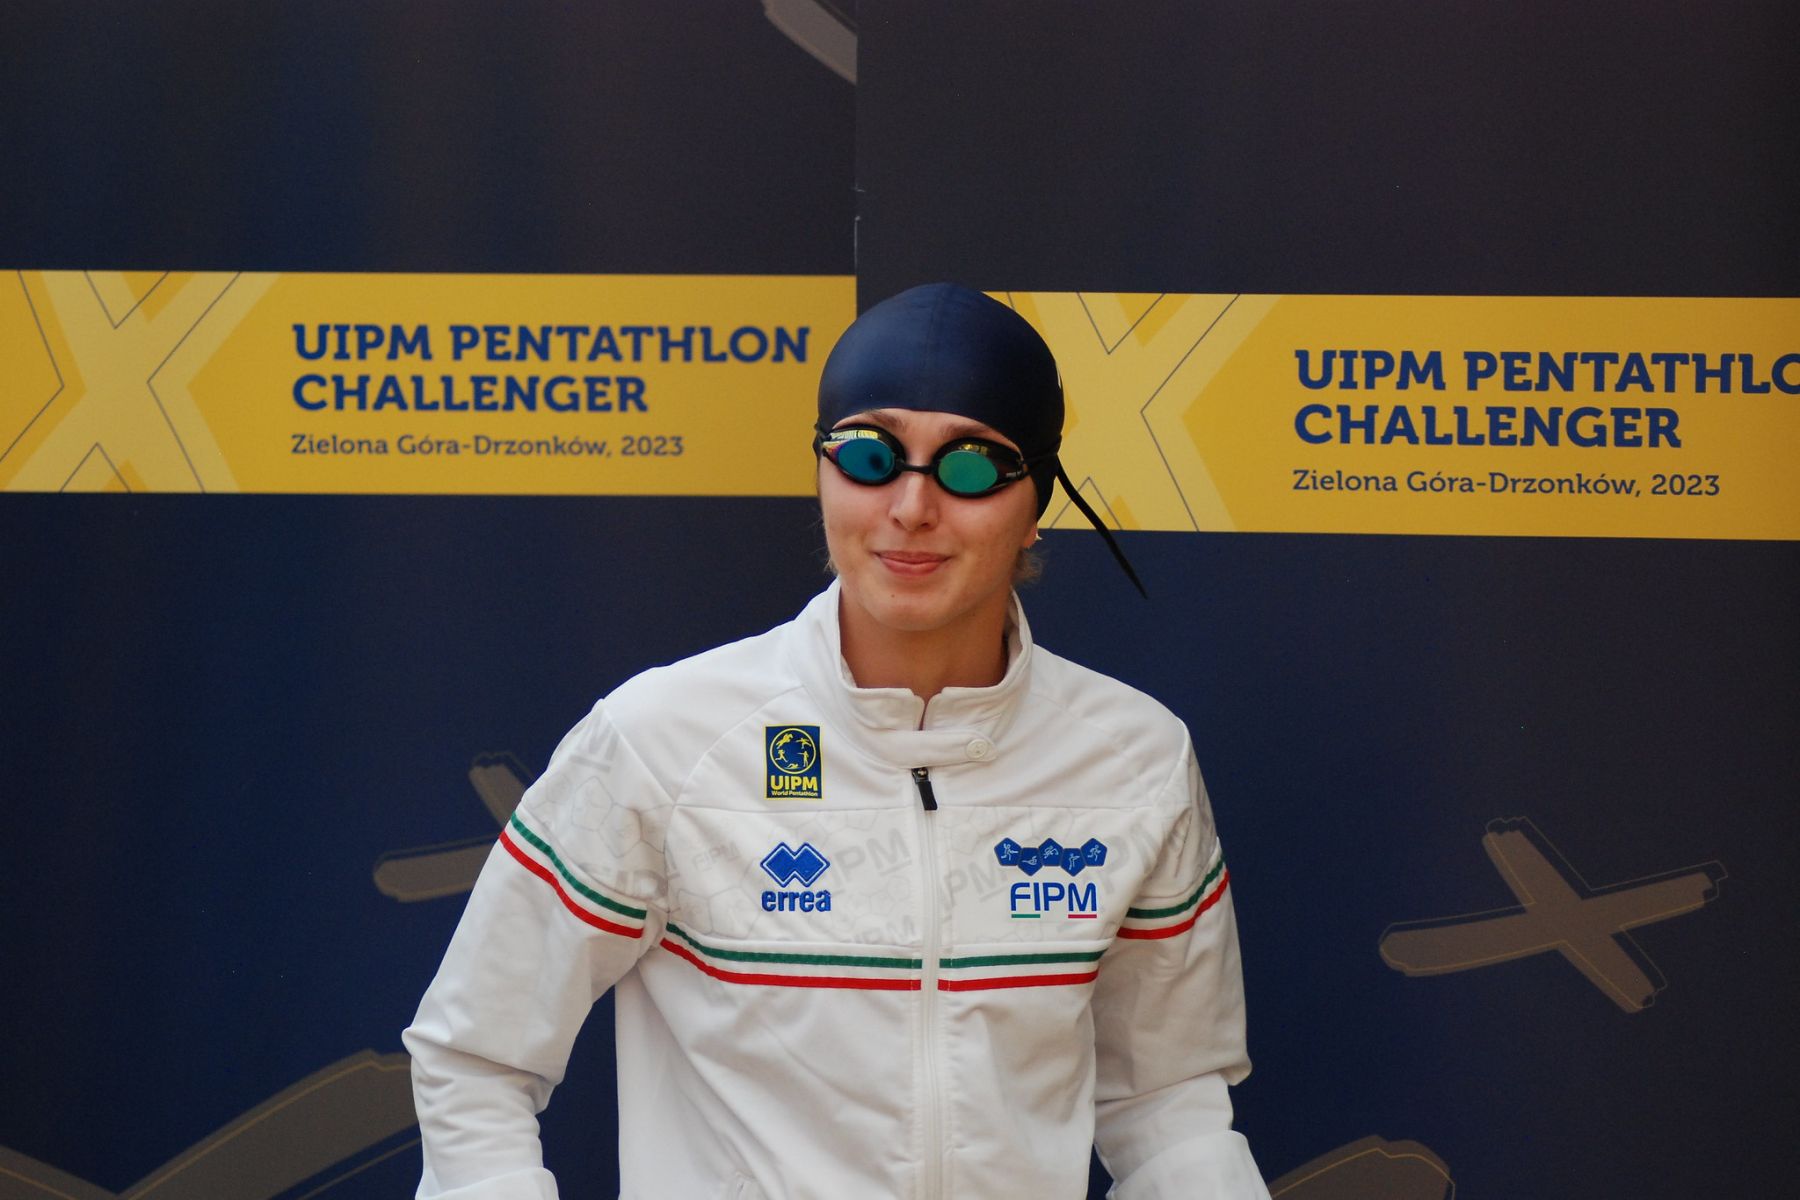 Uipm Pentathlon Challenger: Mercuri, Prampolini e Aurora Tognetti centrano la finale